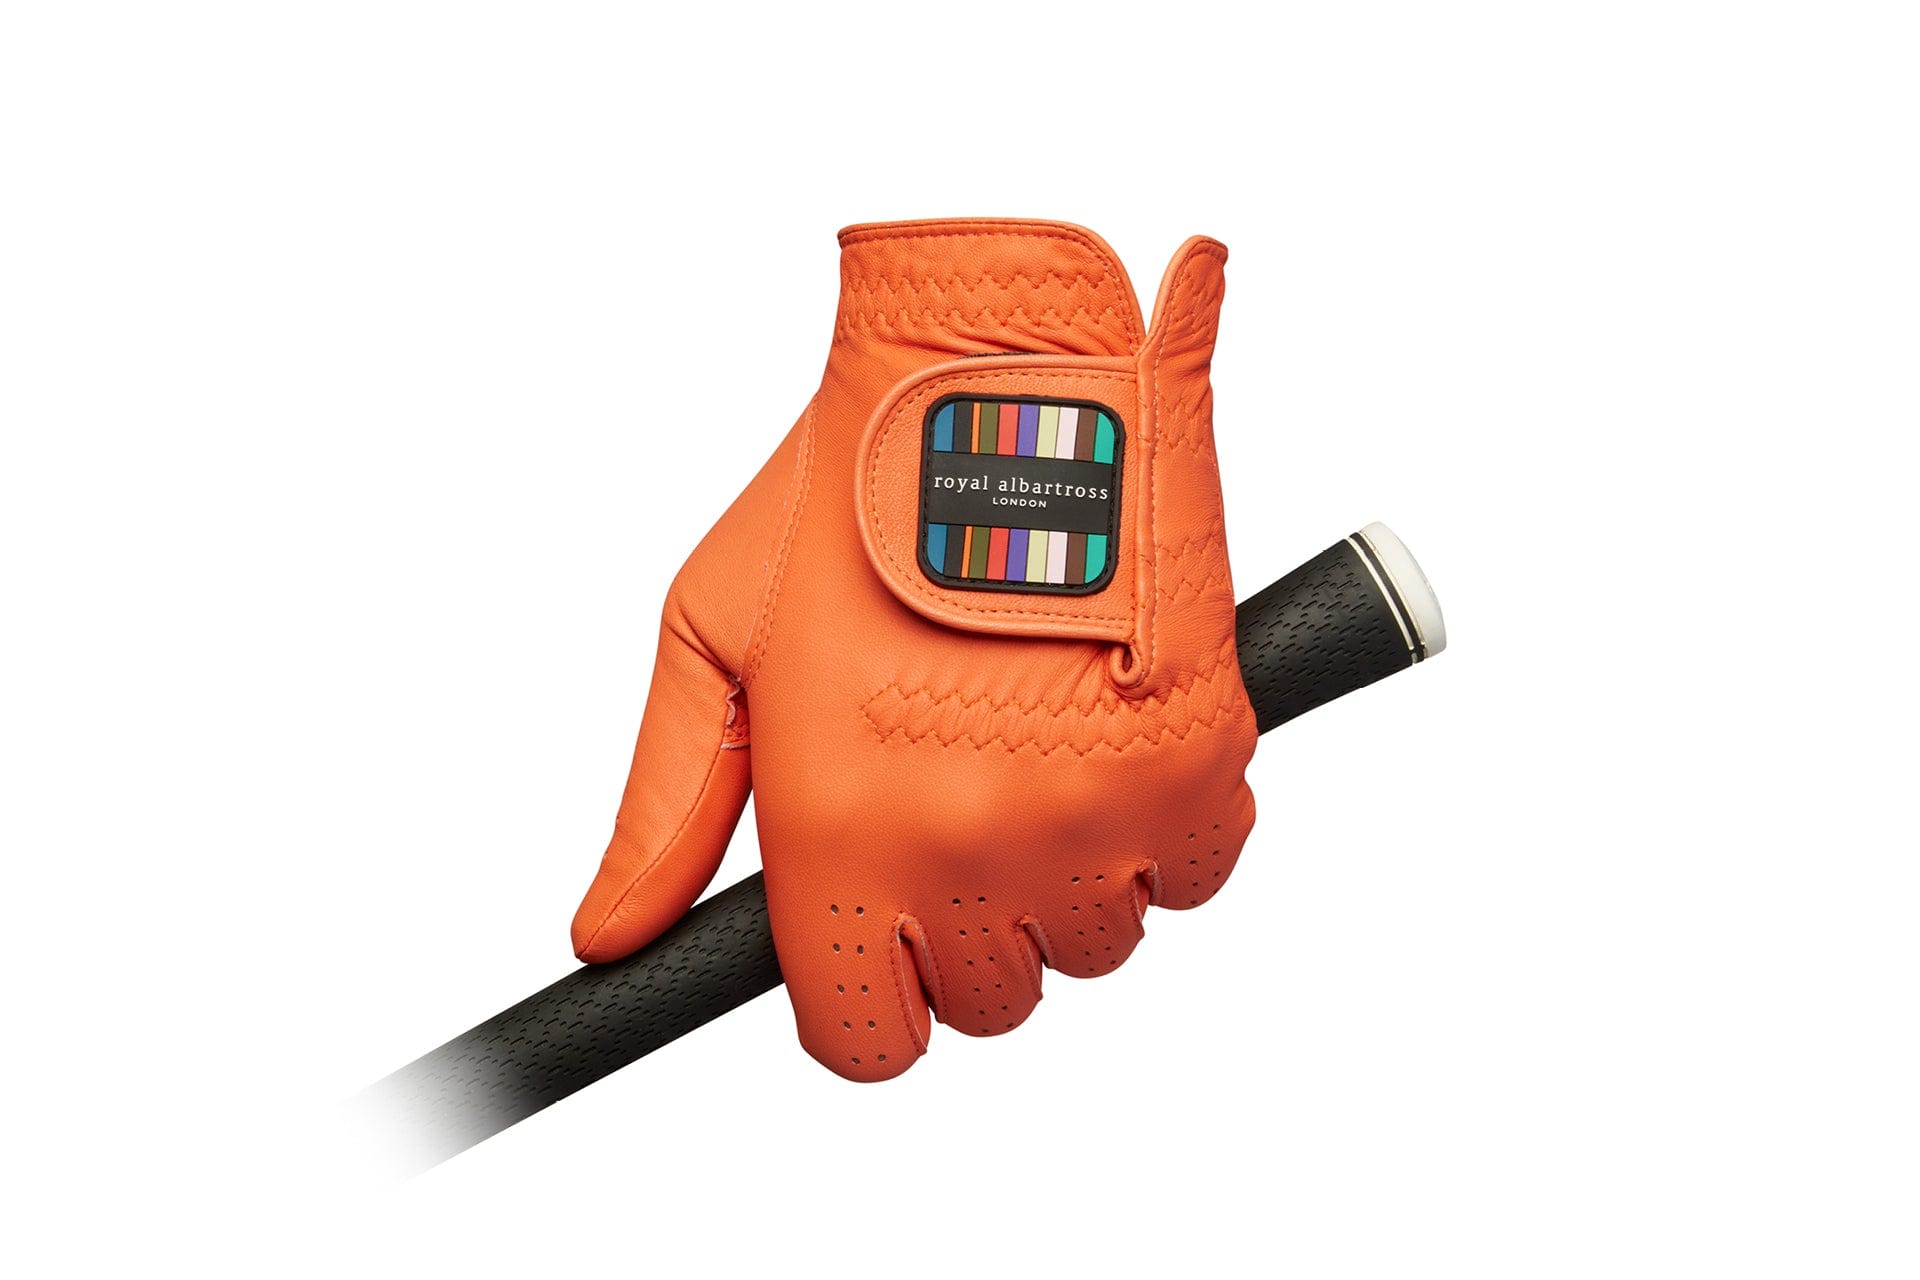 Men's Leather Golf Glove | Orange Cabretta Leather | Royal Albartross Windsor v2 Orange